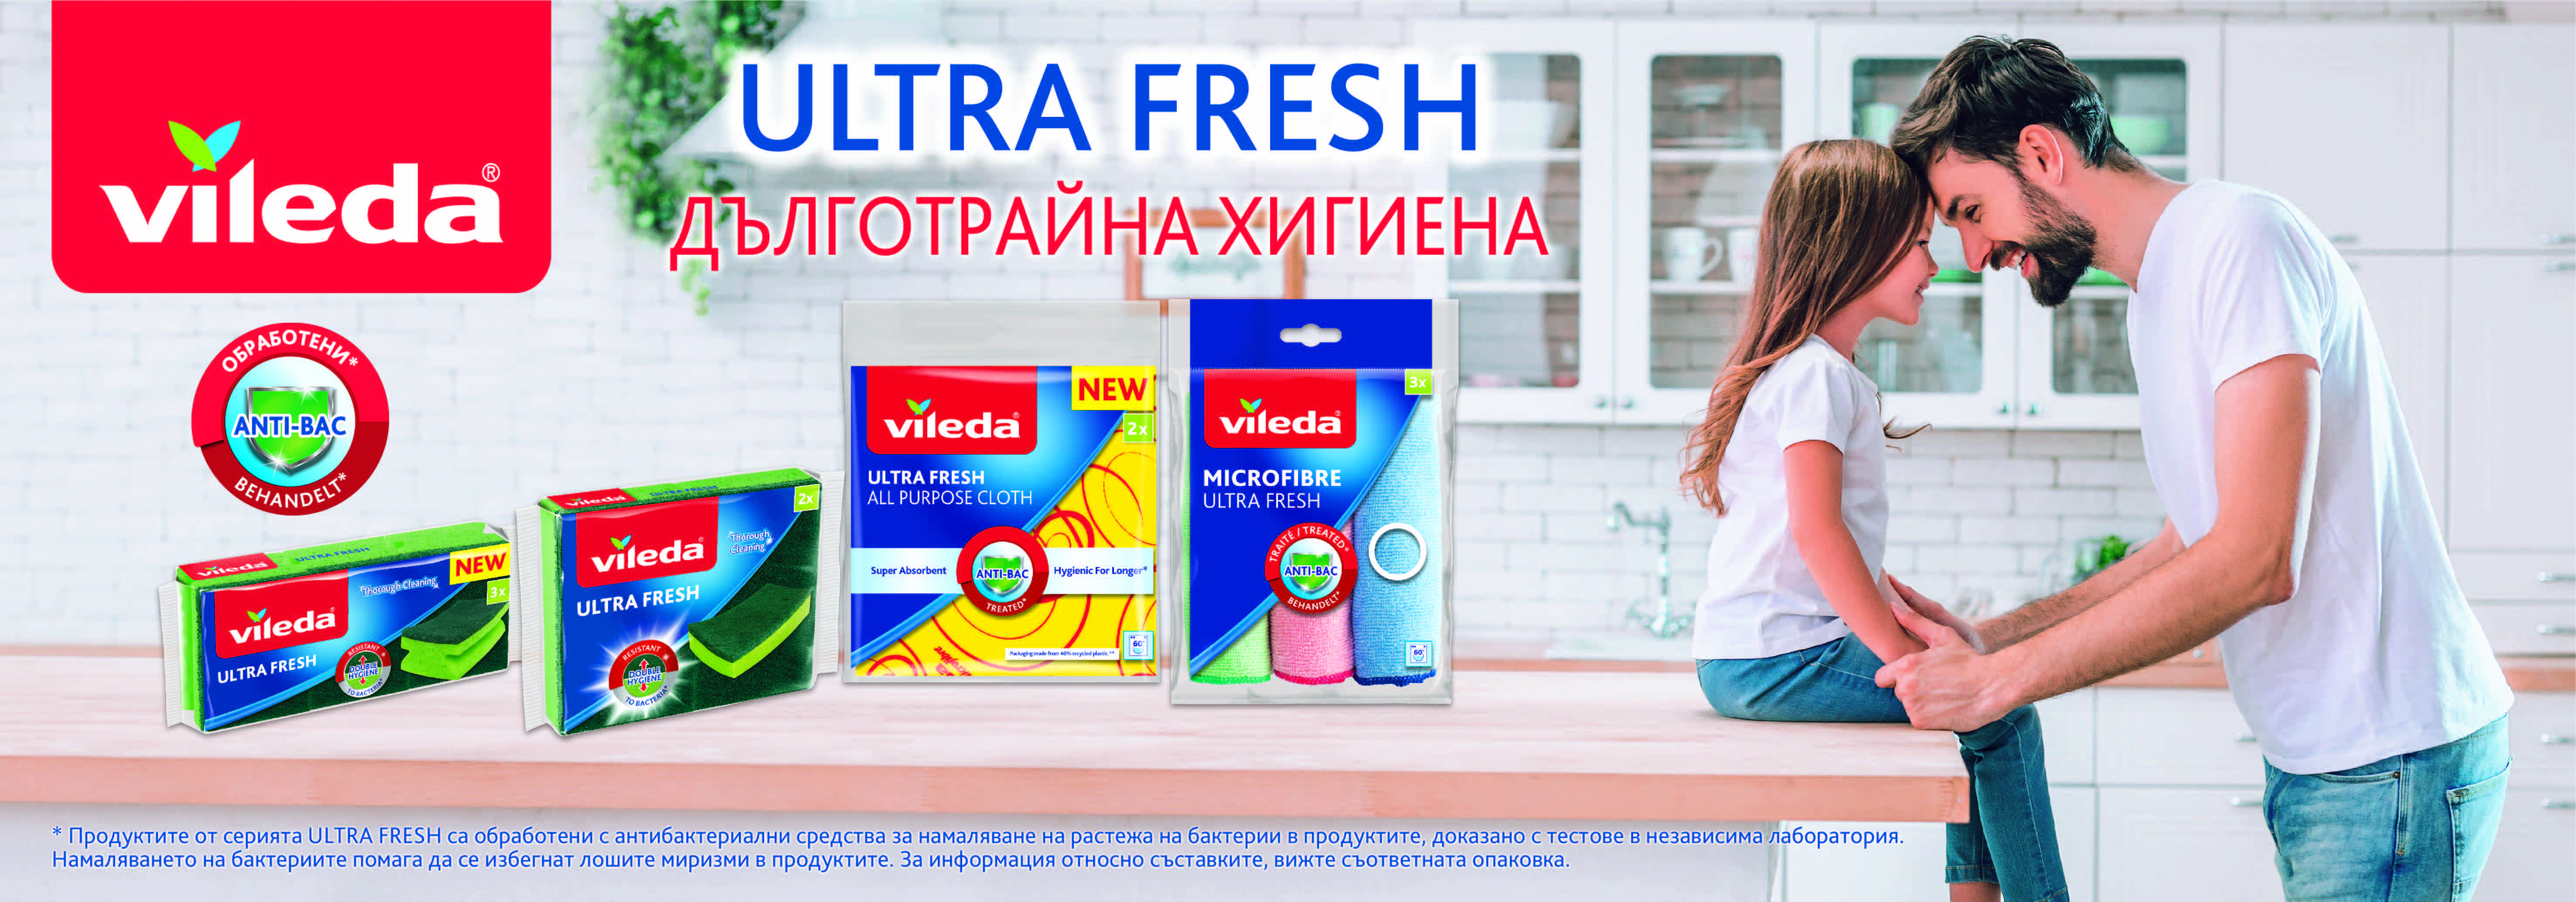 Vileda представя серията ULTRA FRESH